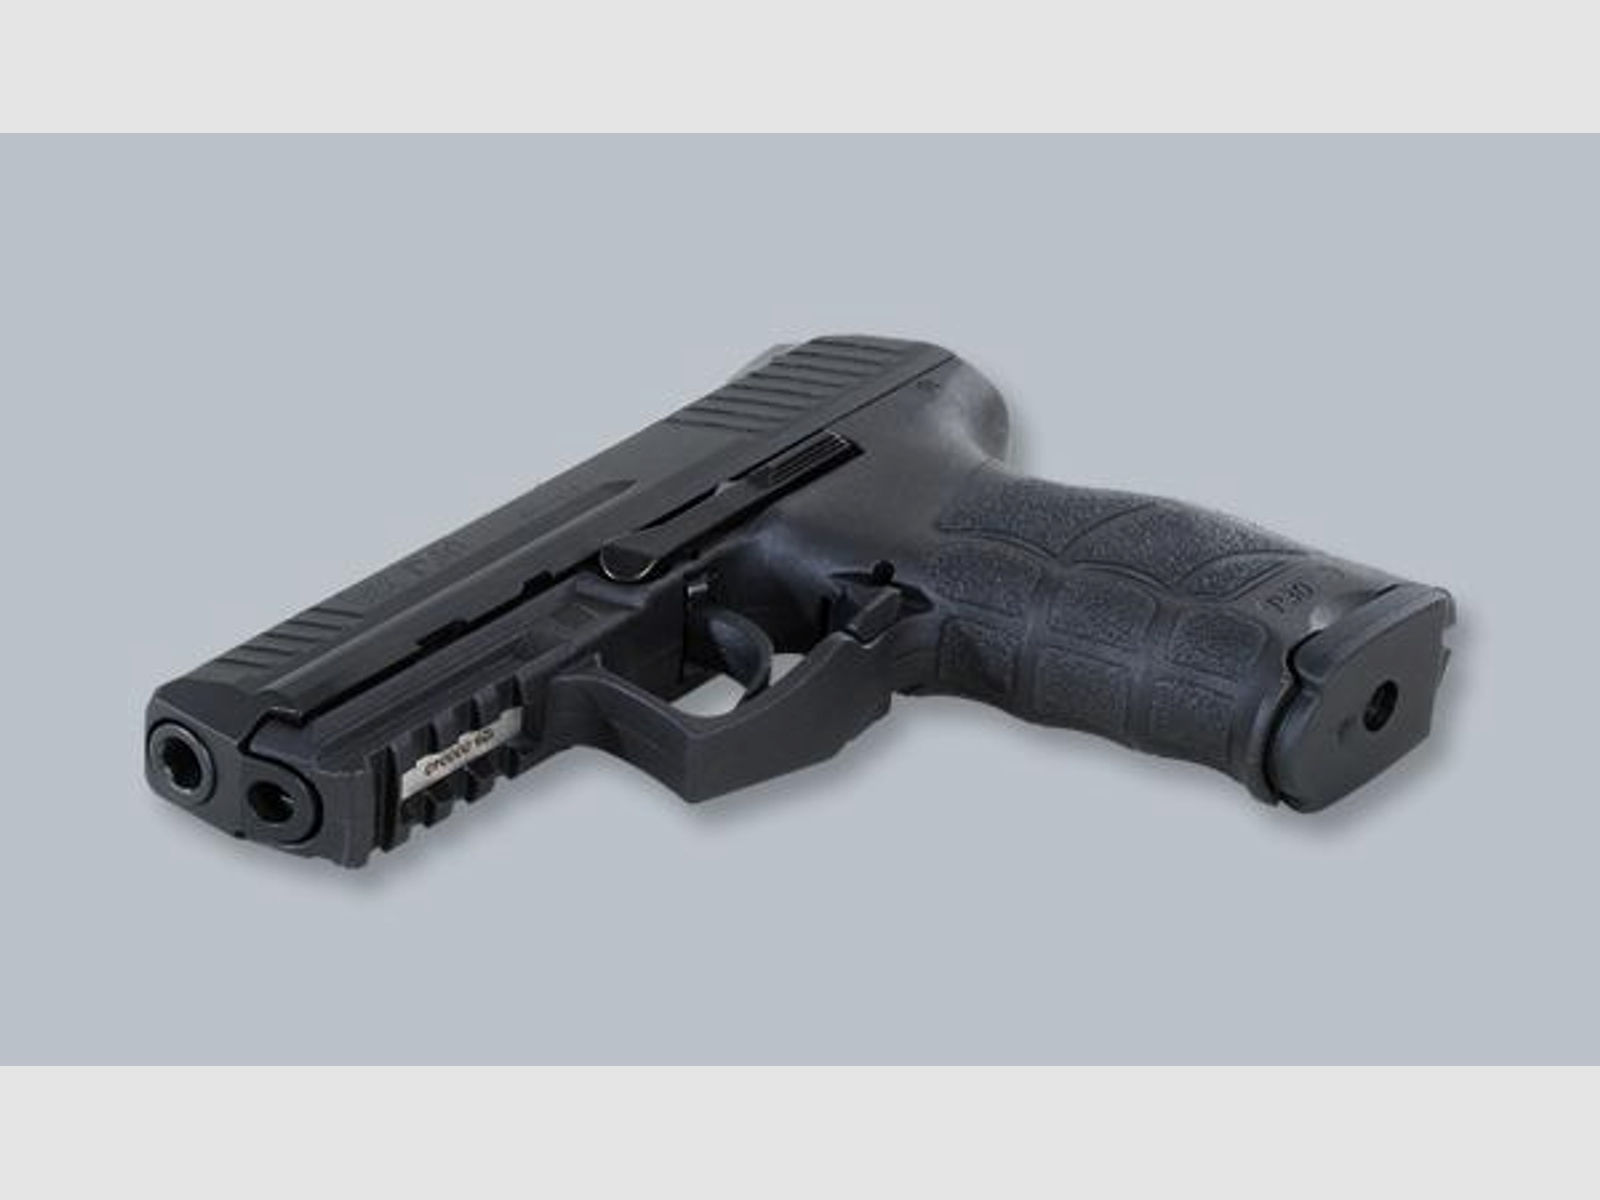 HECKLER & KOCH Pistole Mod. P30 (V3) 9mmLuger   LL 98mm